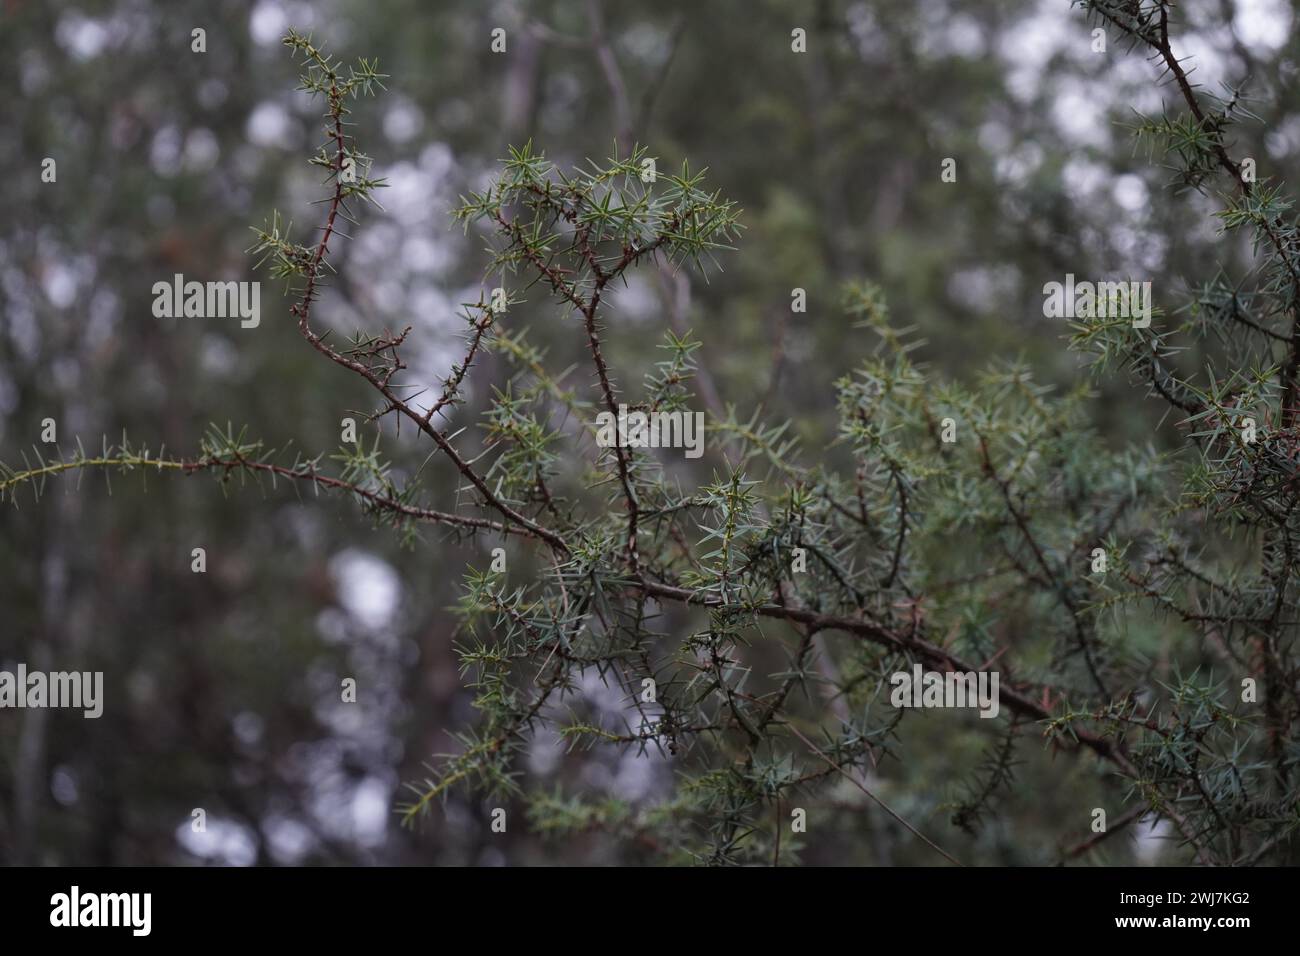 Juniper, Cade, cade juniper, prickly juniper, prickly cedar, or sharp cedar(Juniperus oxycedrus) Stock Photo